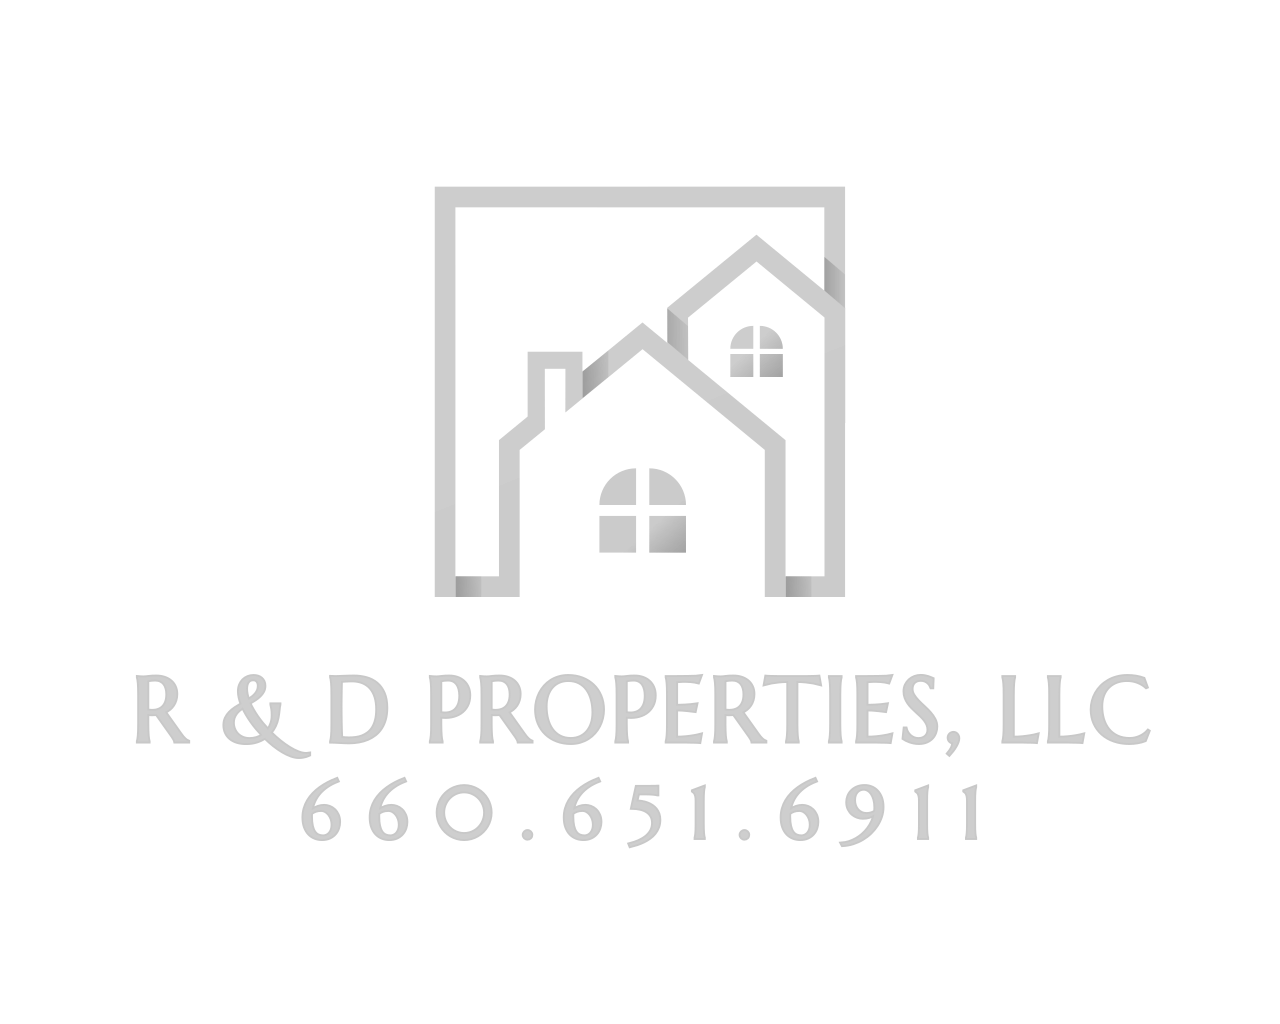 R&D Properties, LLC